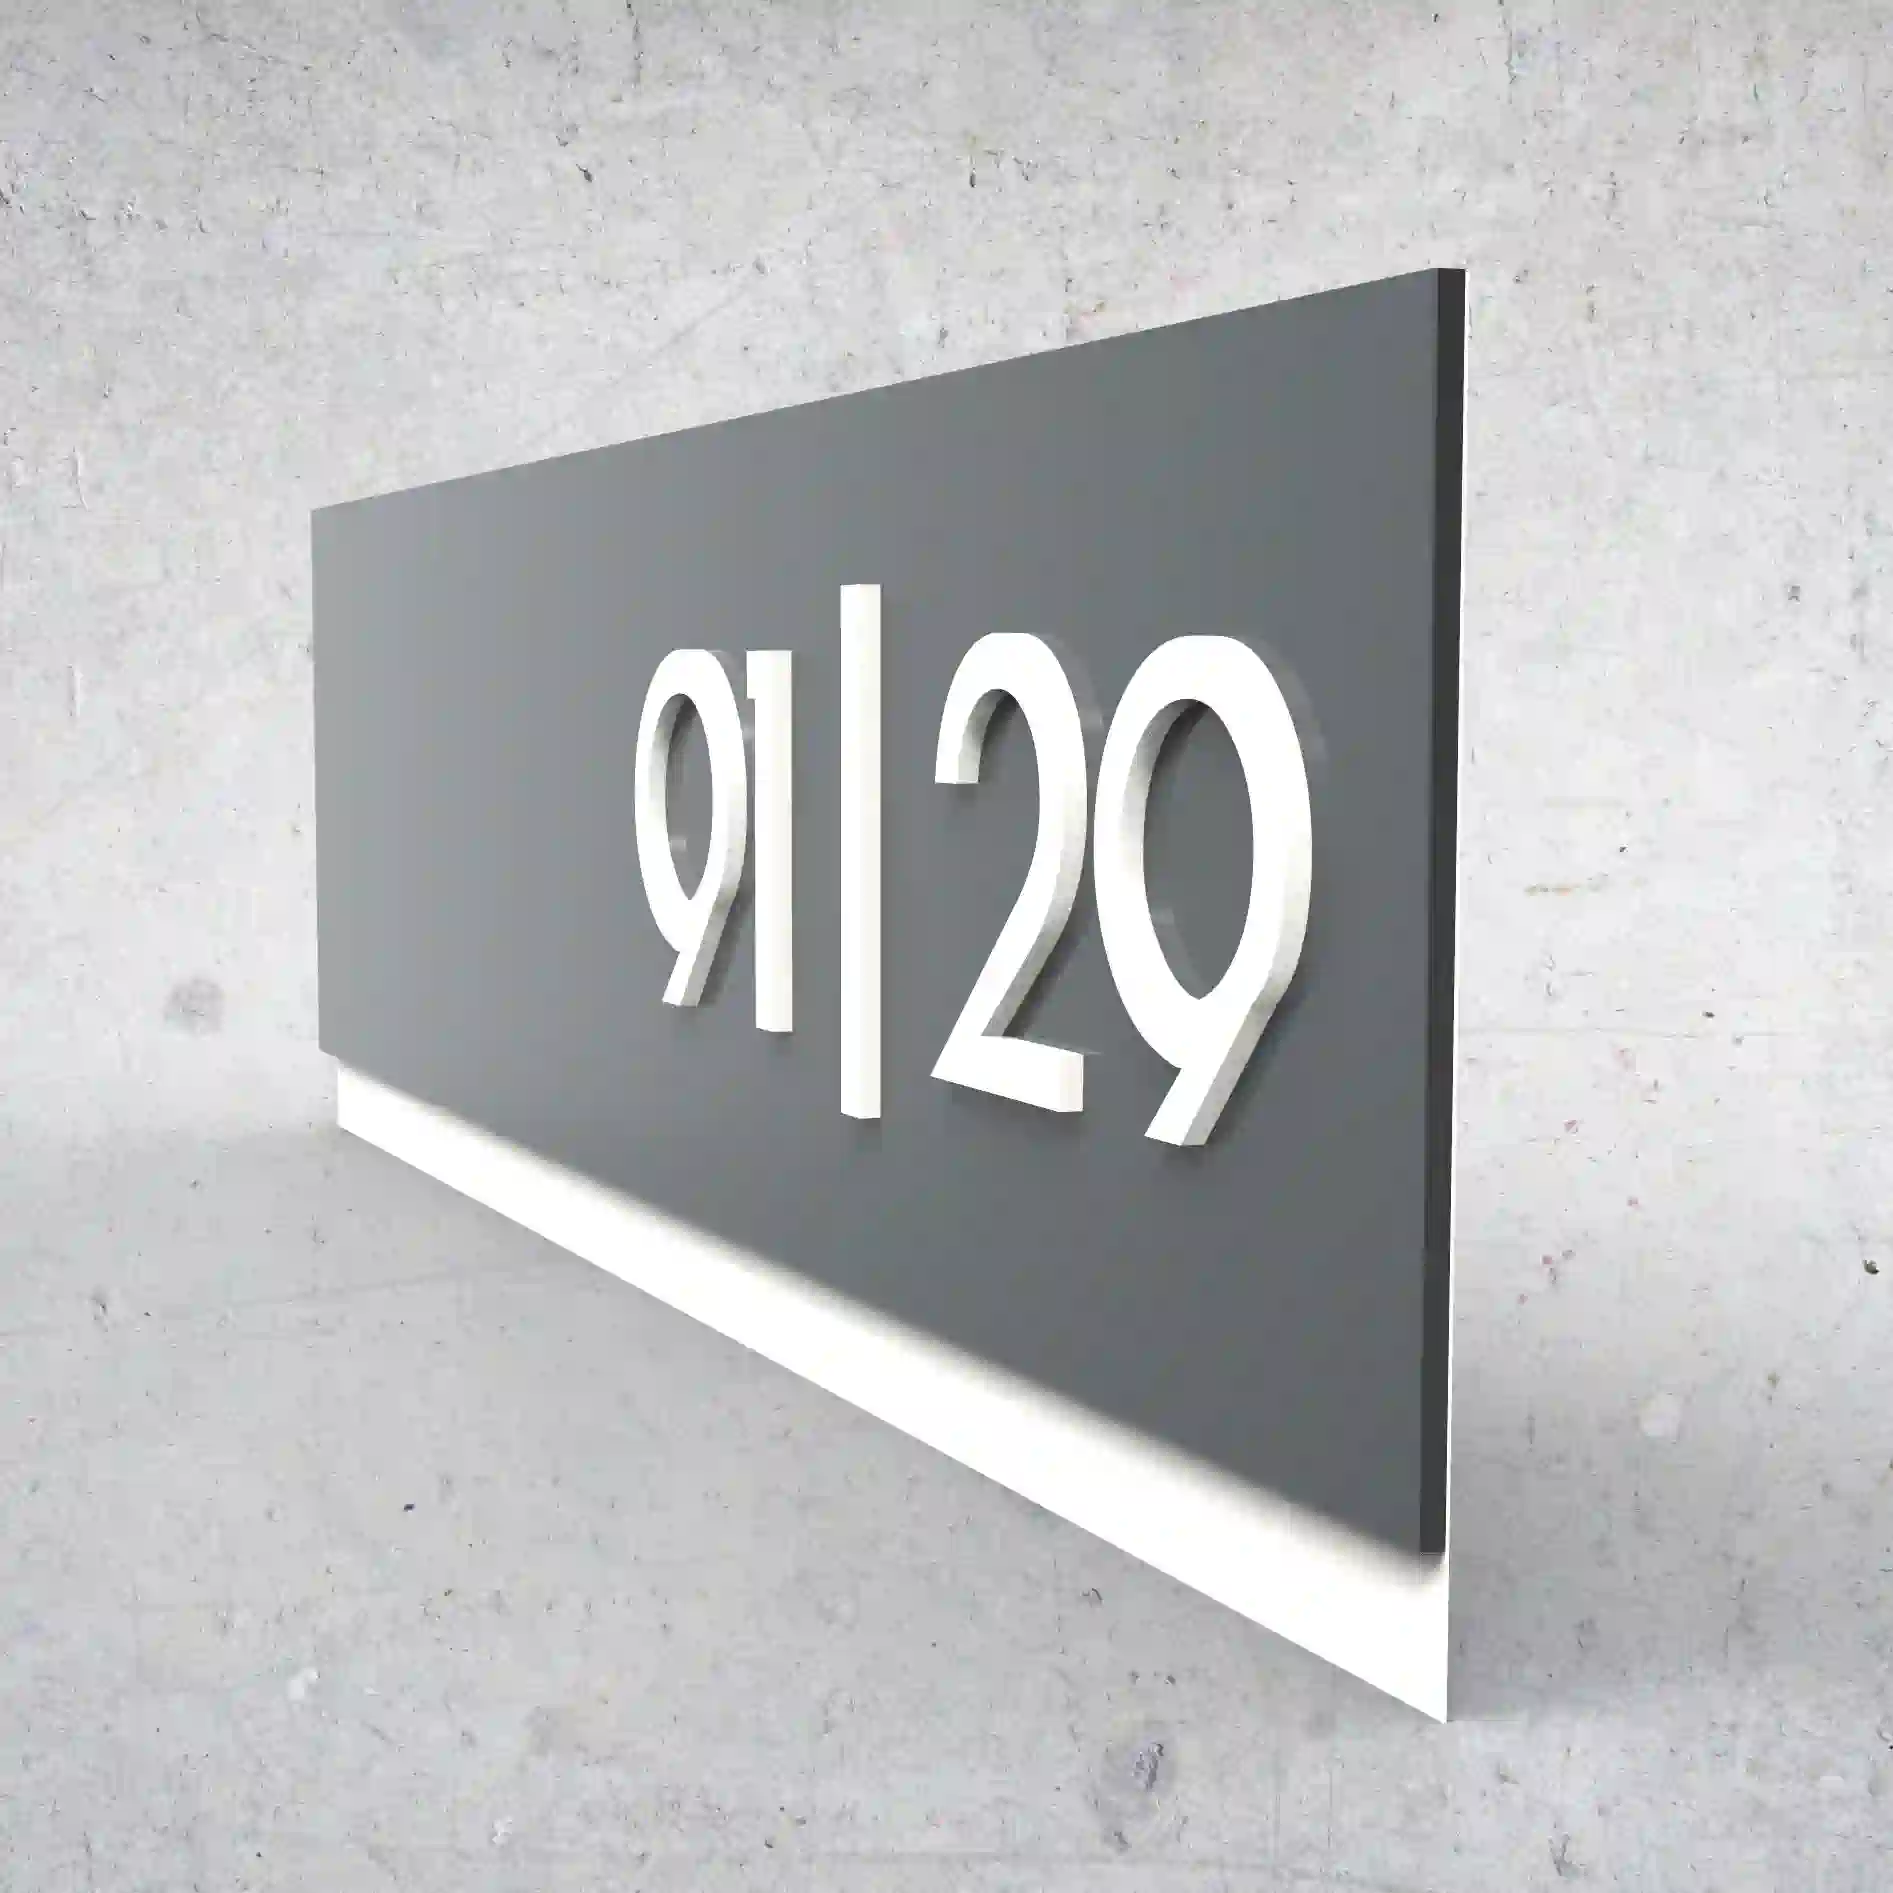 Moderní číslo popisné na dům